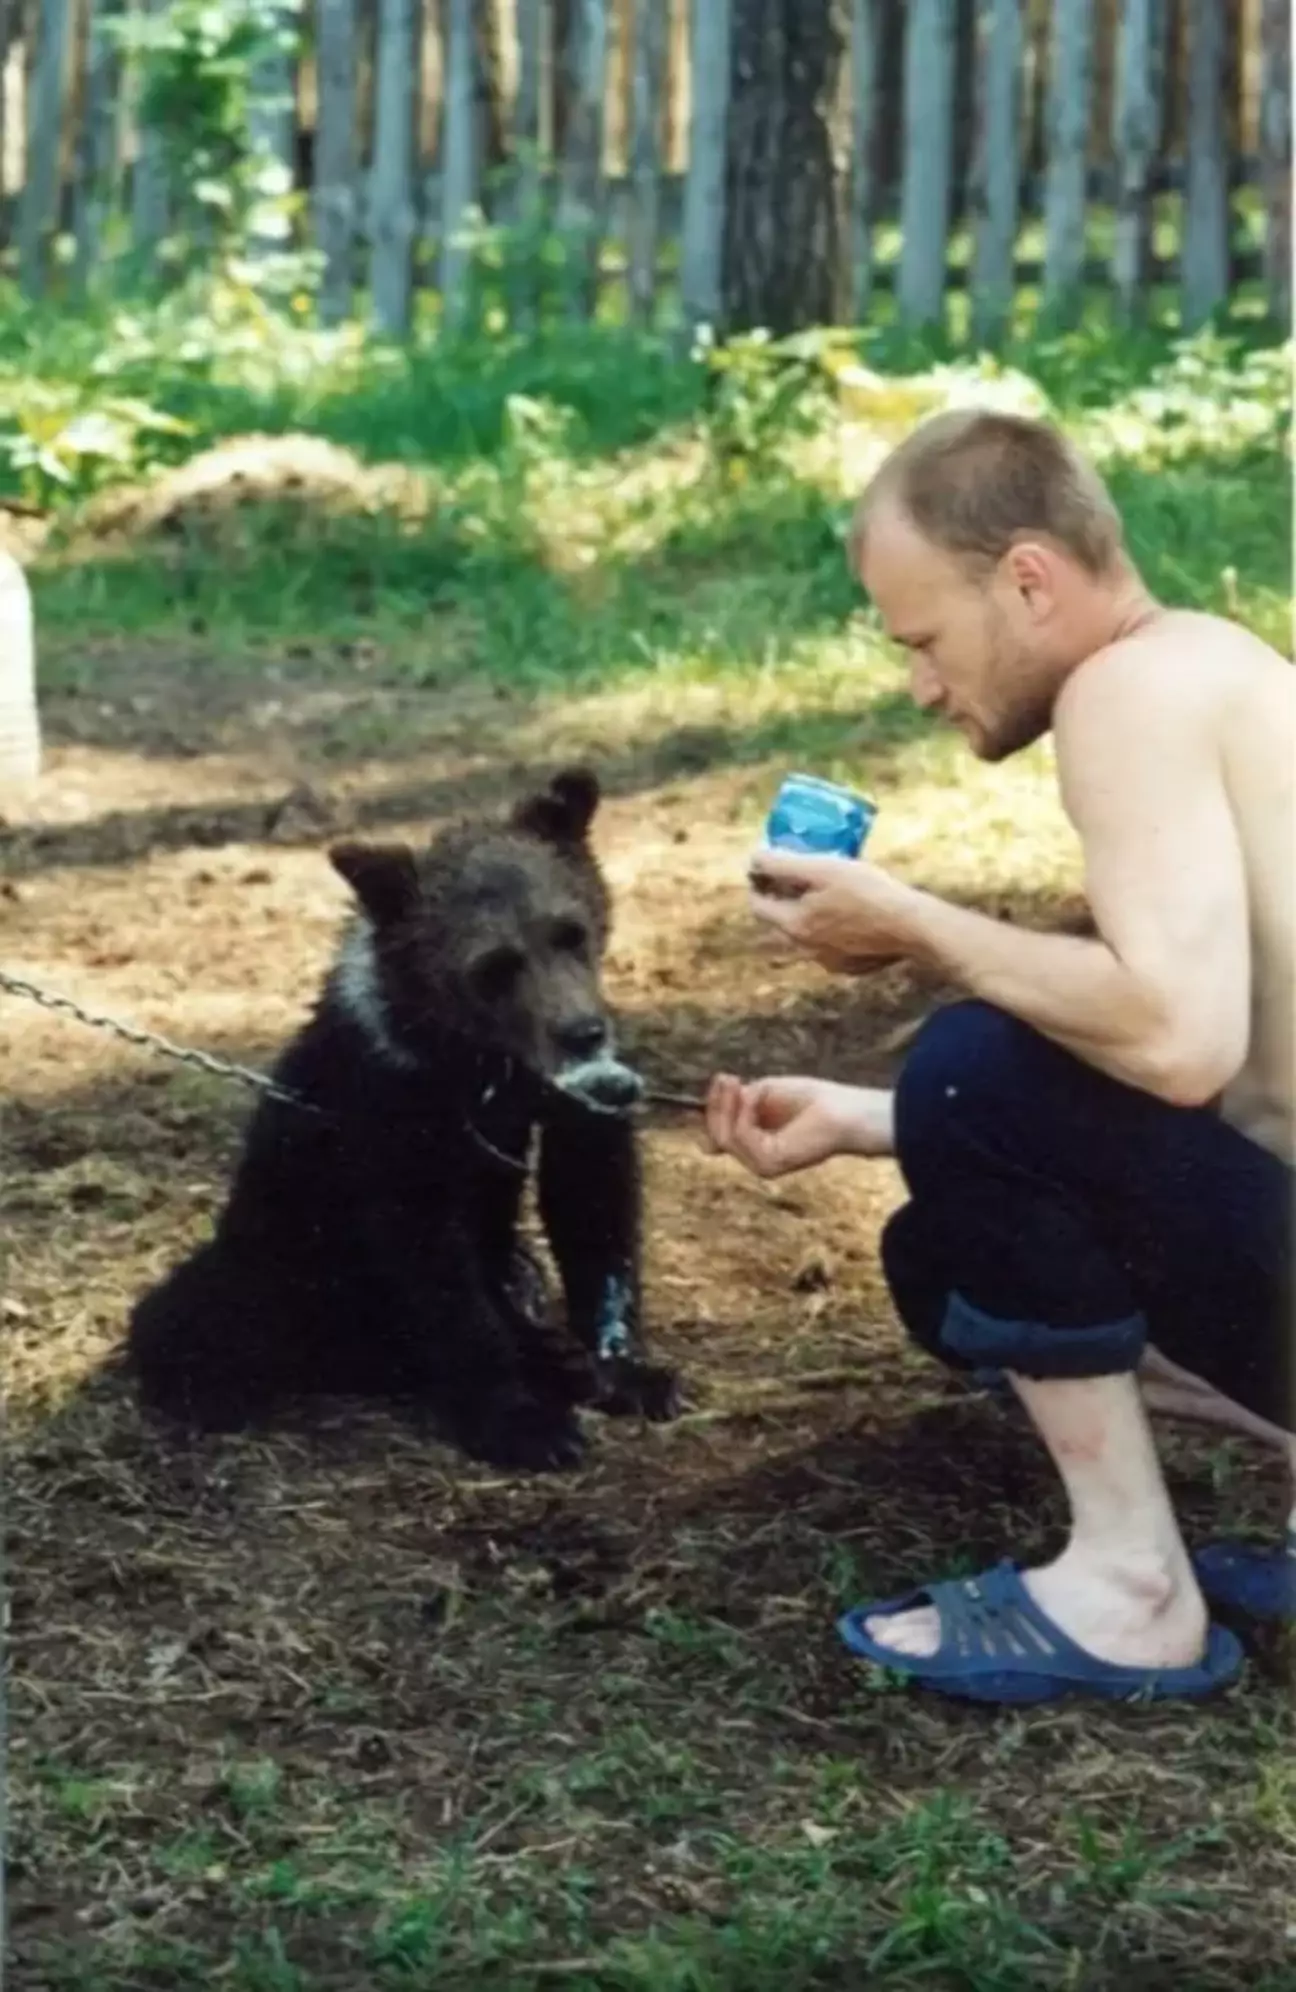 Homem russo que adotou filhote de urso foi comido pelo mesmo urso 4 anos depois